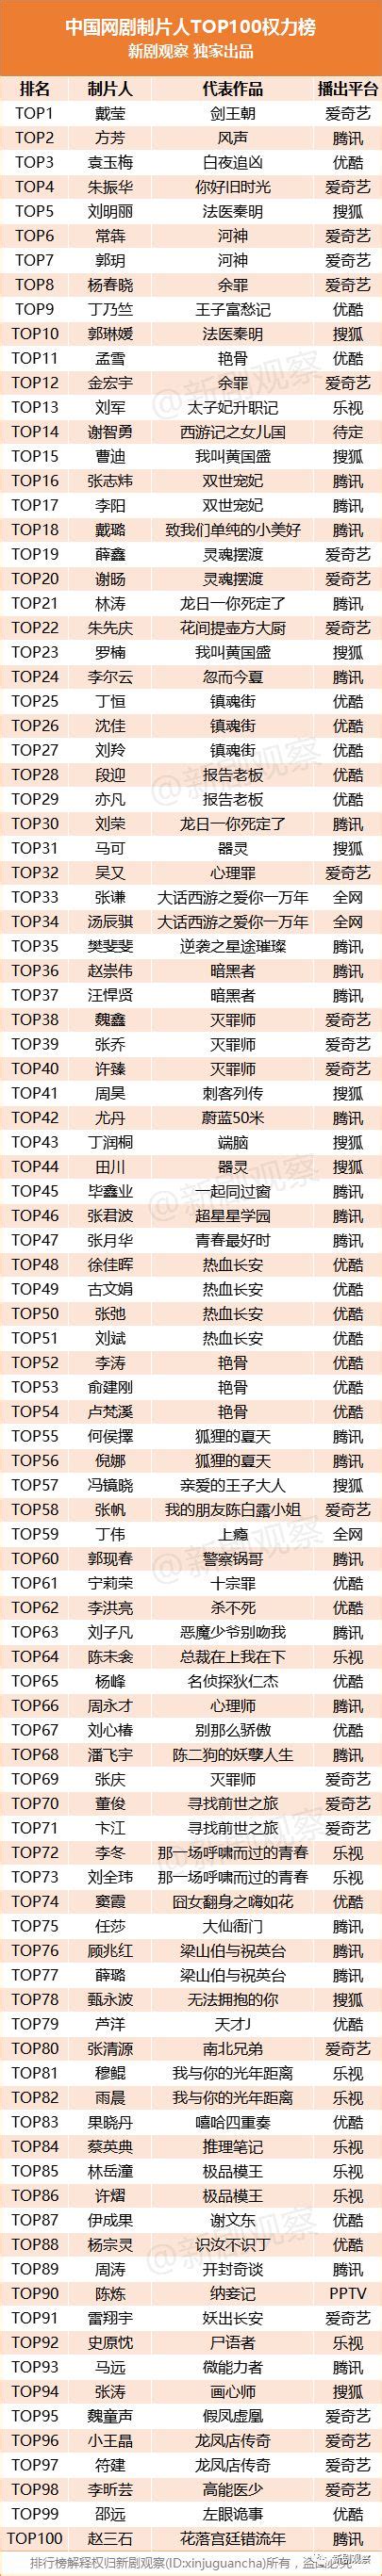 中国网剧制片人TOP100权力榜出炉！戴莹、方芳、袁玉梅位列前三甲，年龄最小的才24岁！